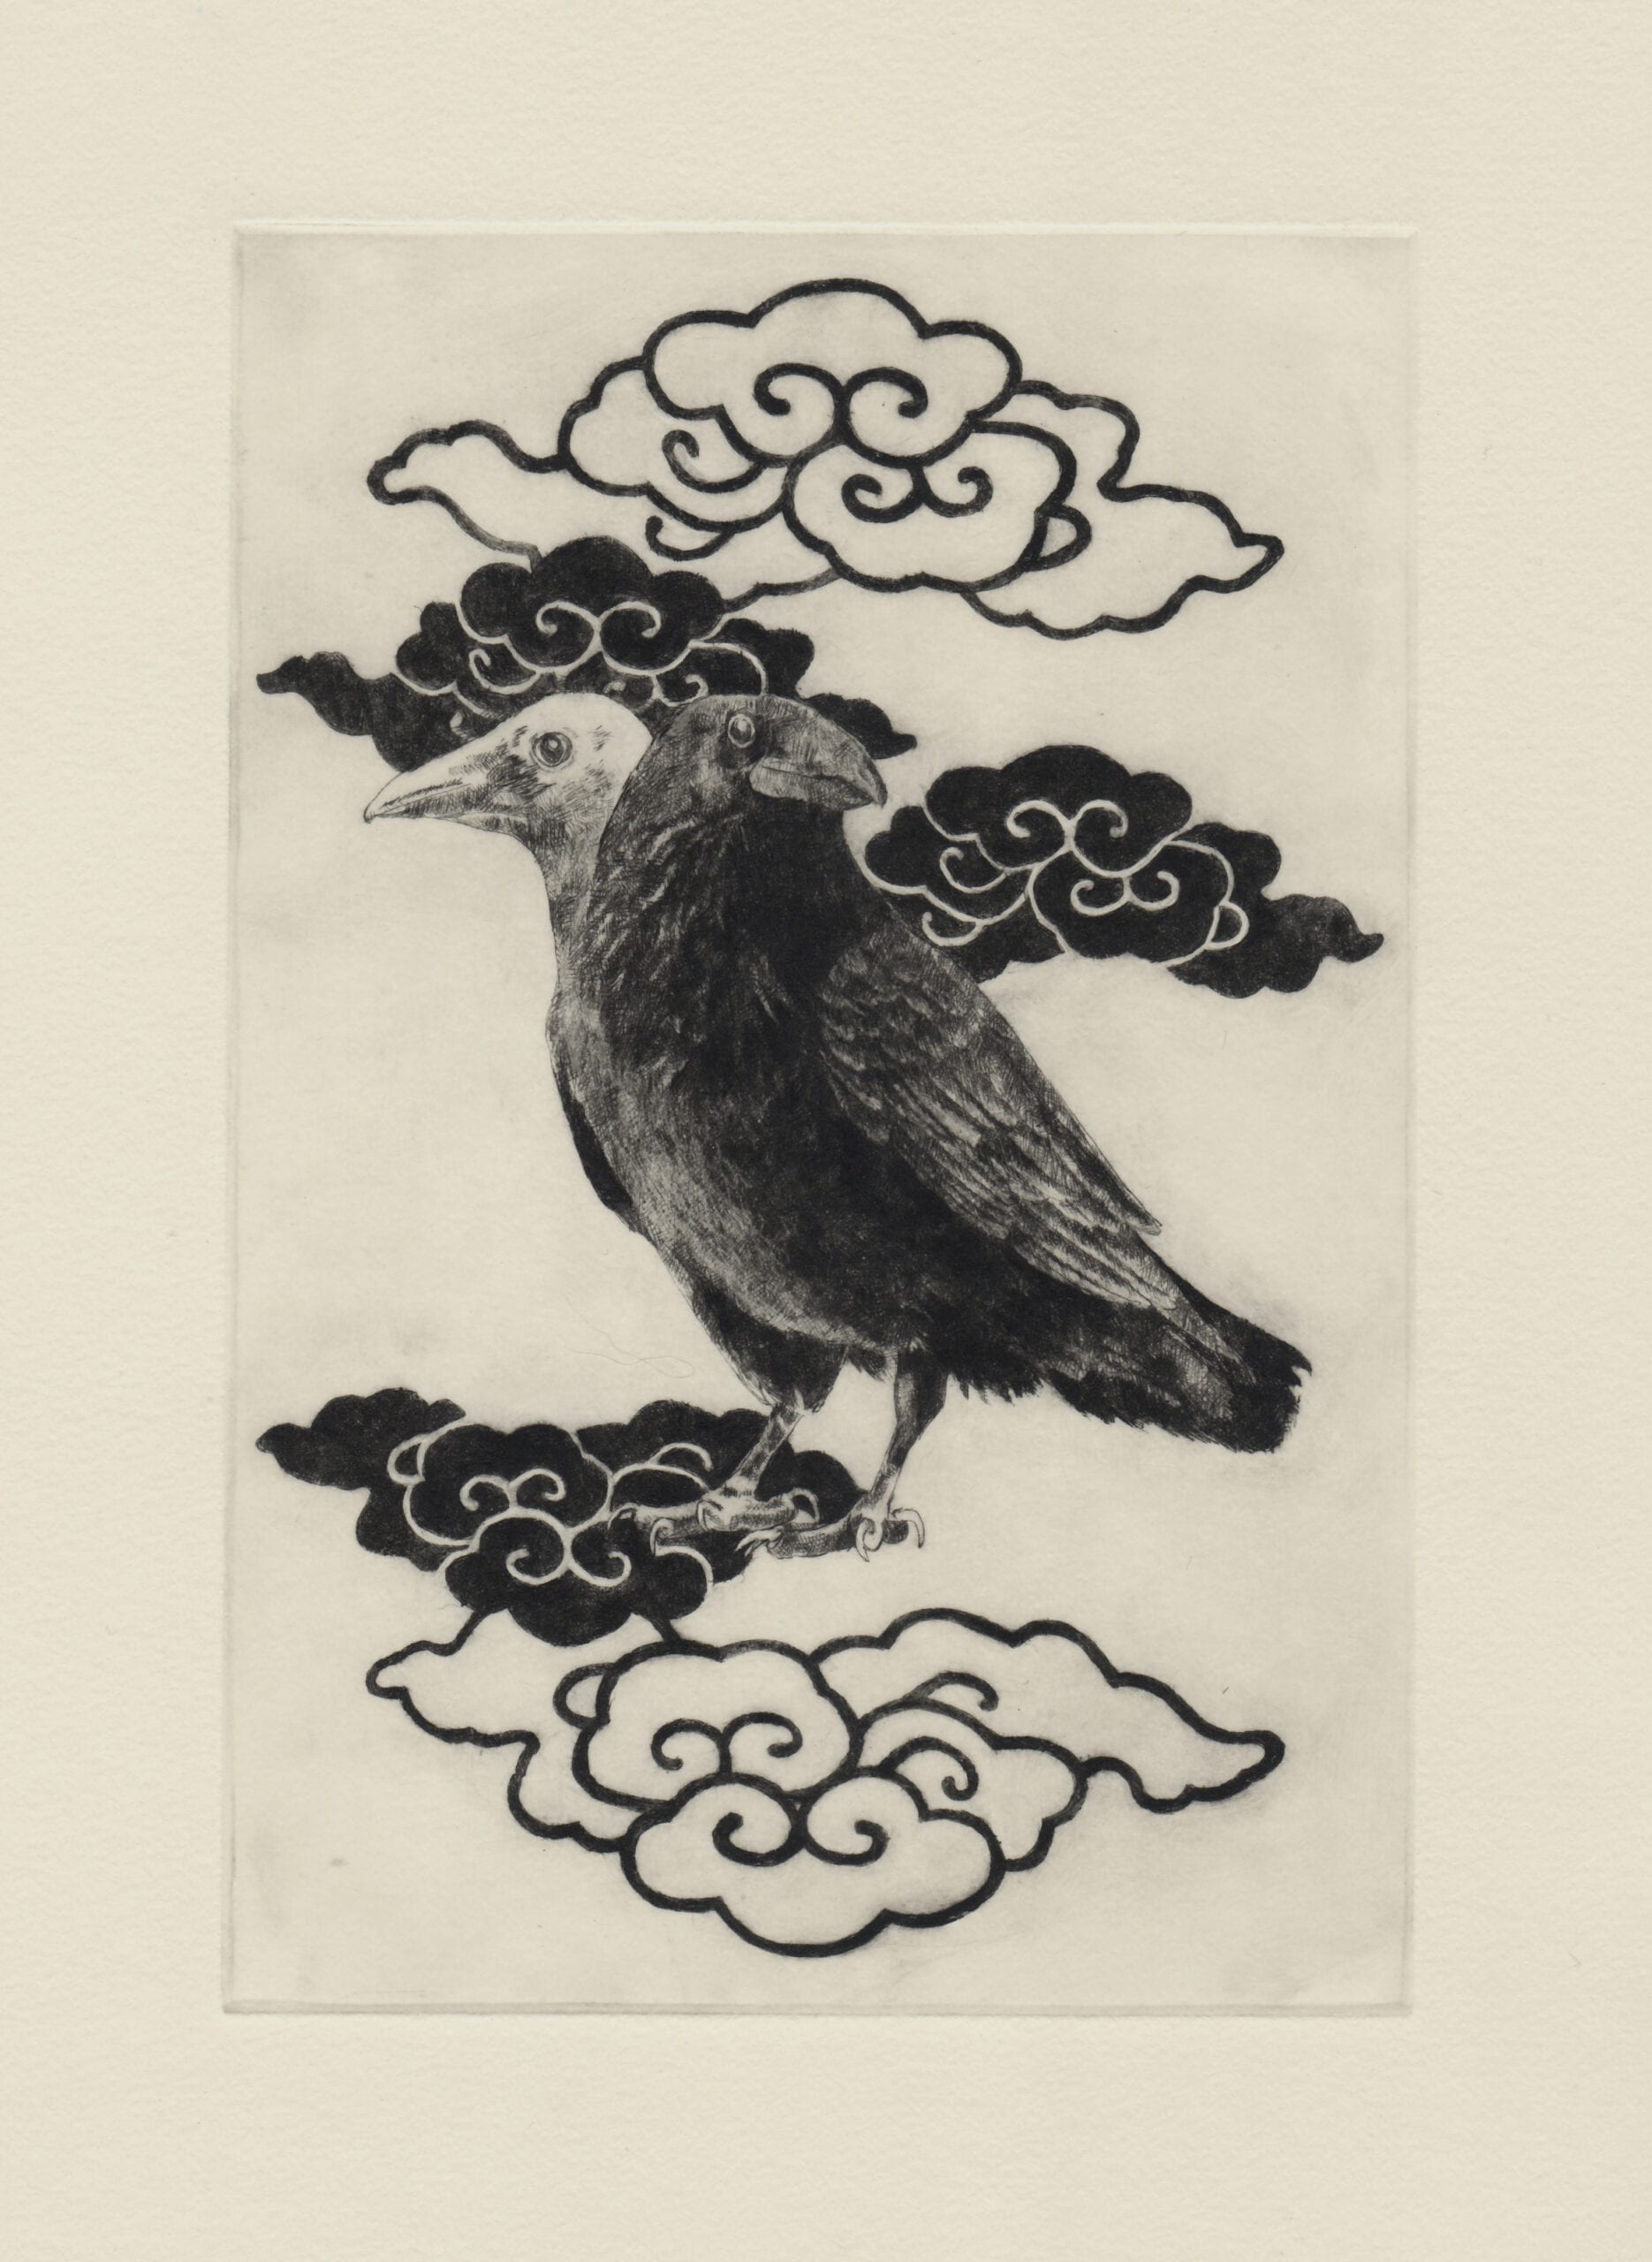 ヨゲンノトリ (drypoint etching by Yaemi Shigyo)